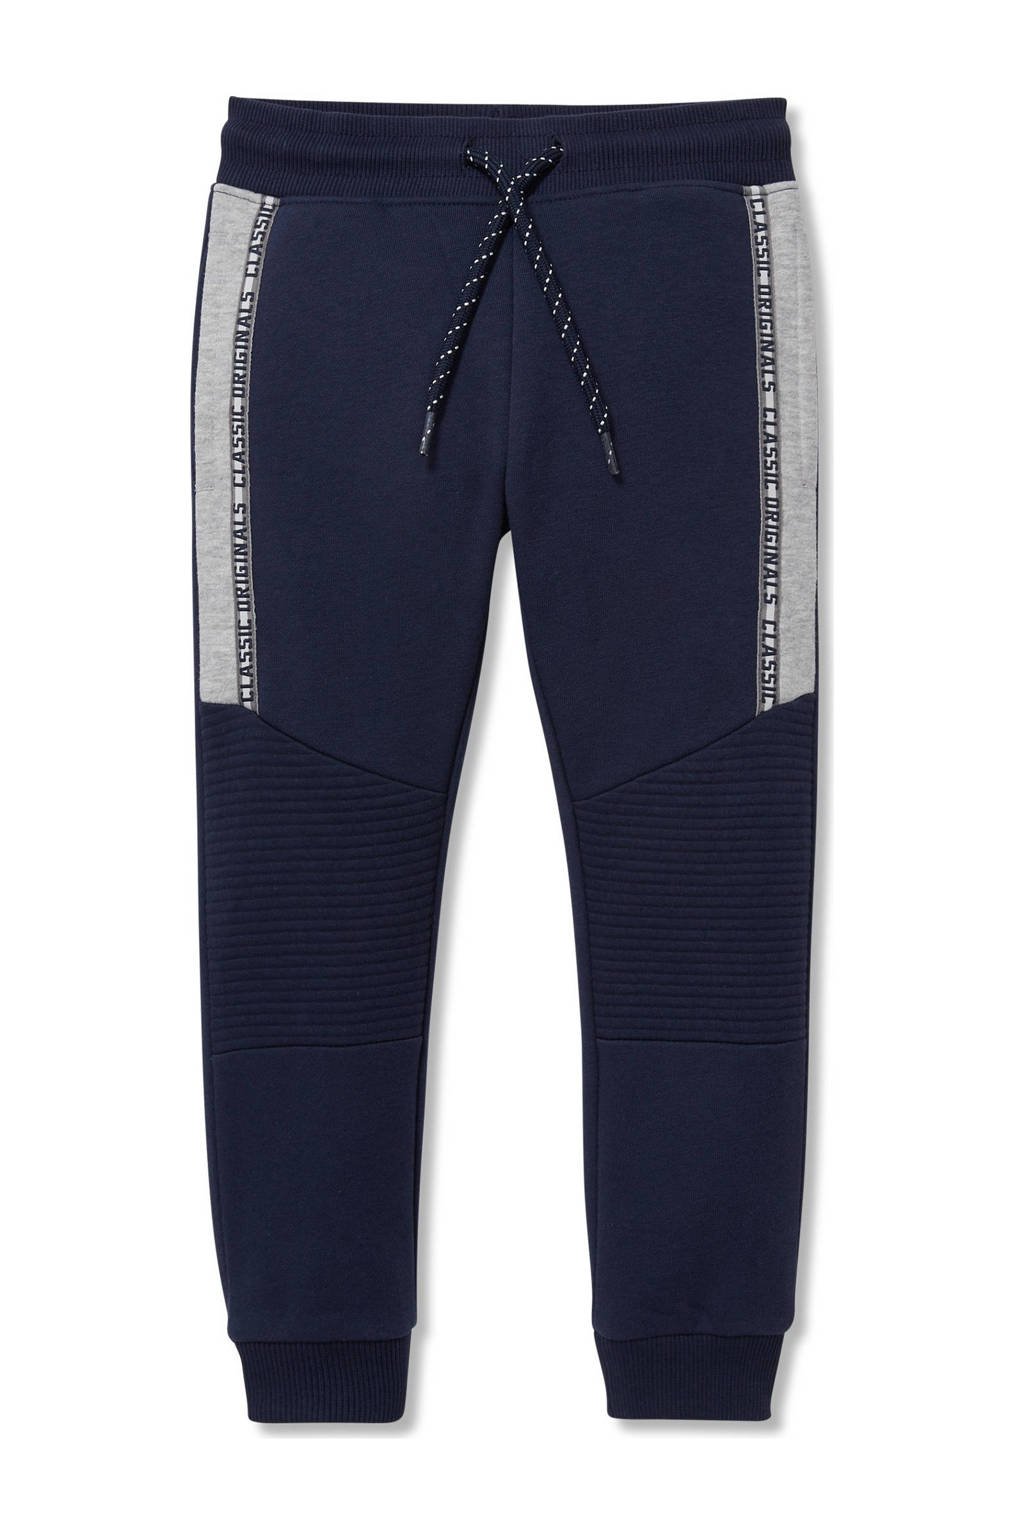 C&A regular fit joggingbroek met tekst donkerblauw 34 inch, Donkerblauw